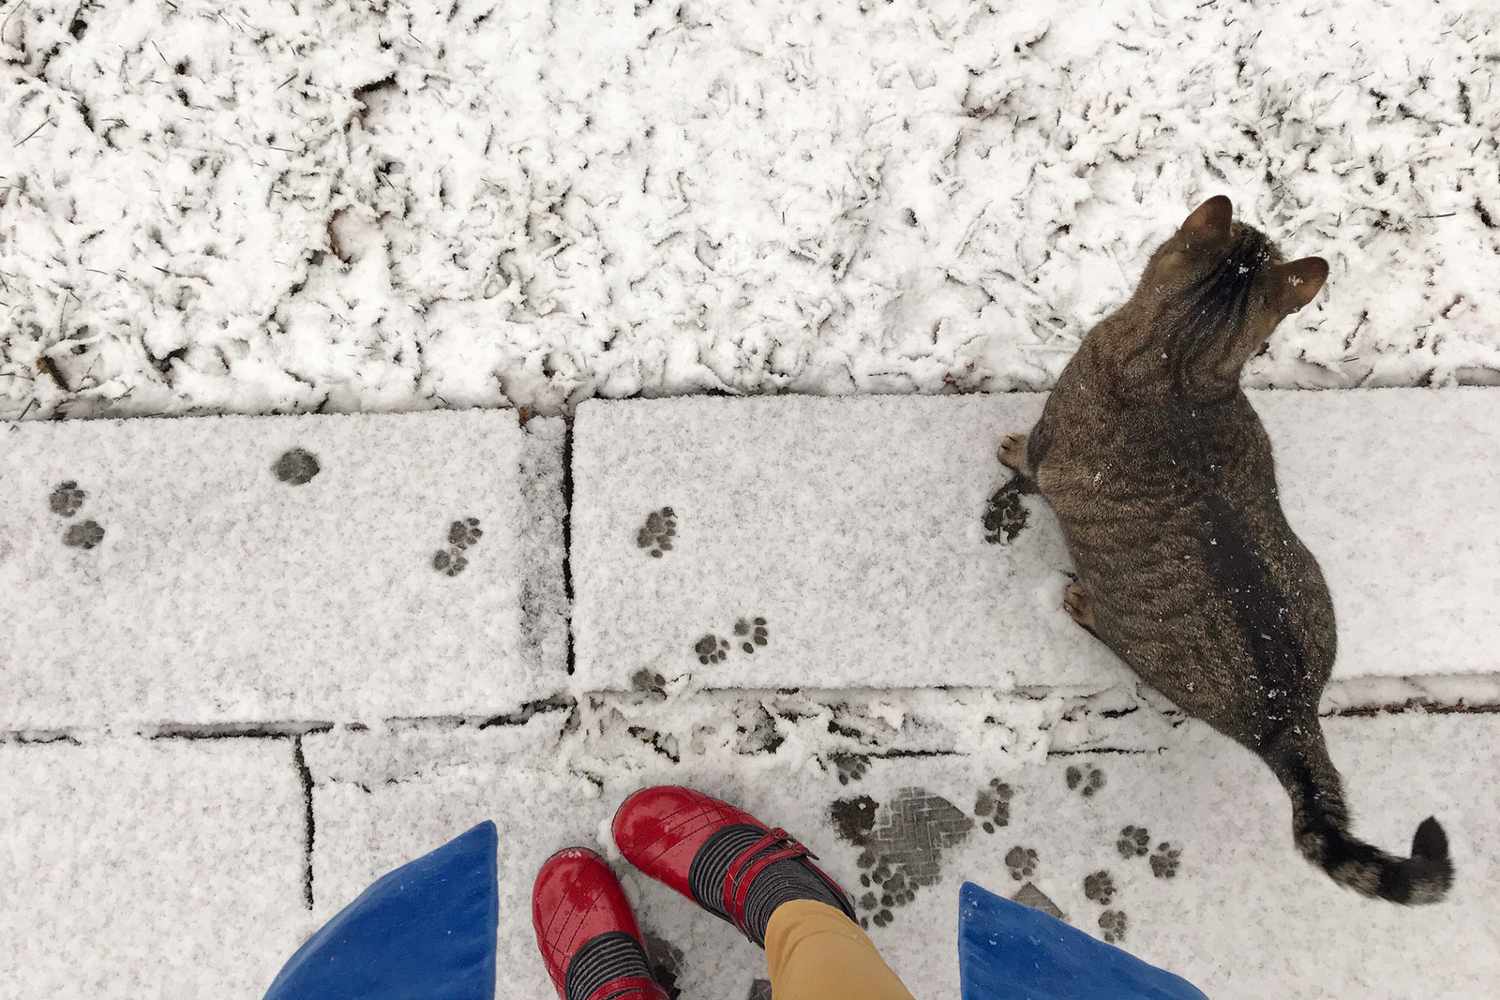 cat walking through snow